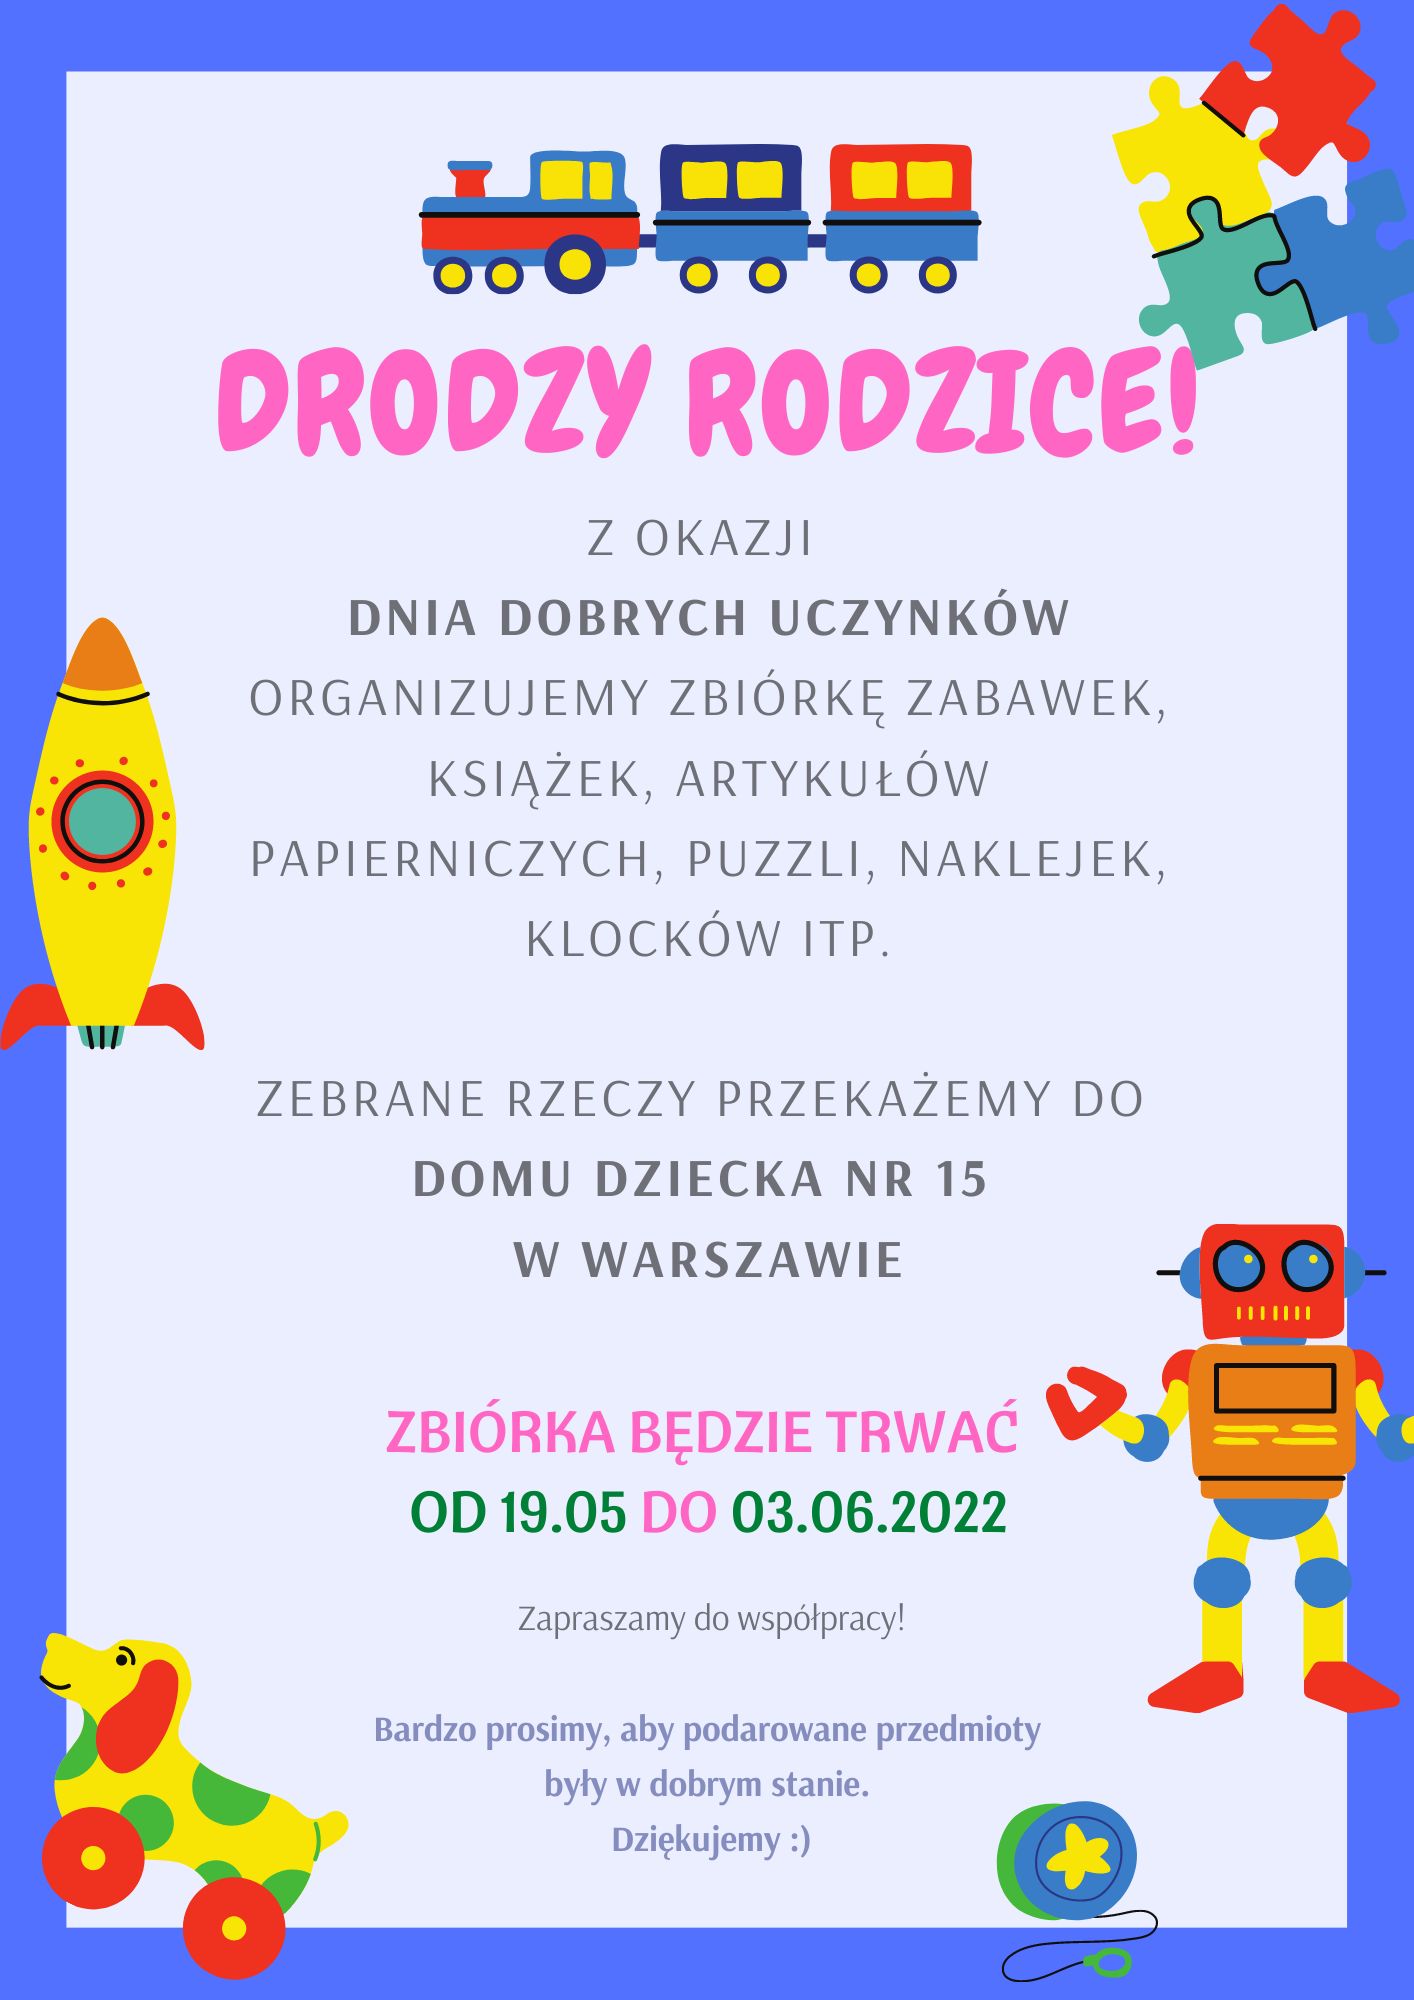 Plakat informujący o zbiórce rzeczy i zabawek dla domu dziecka numer 15 Warszawie